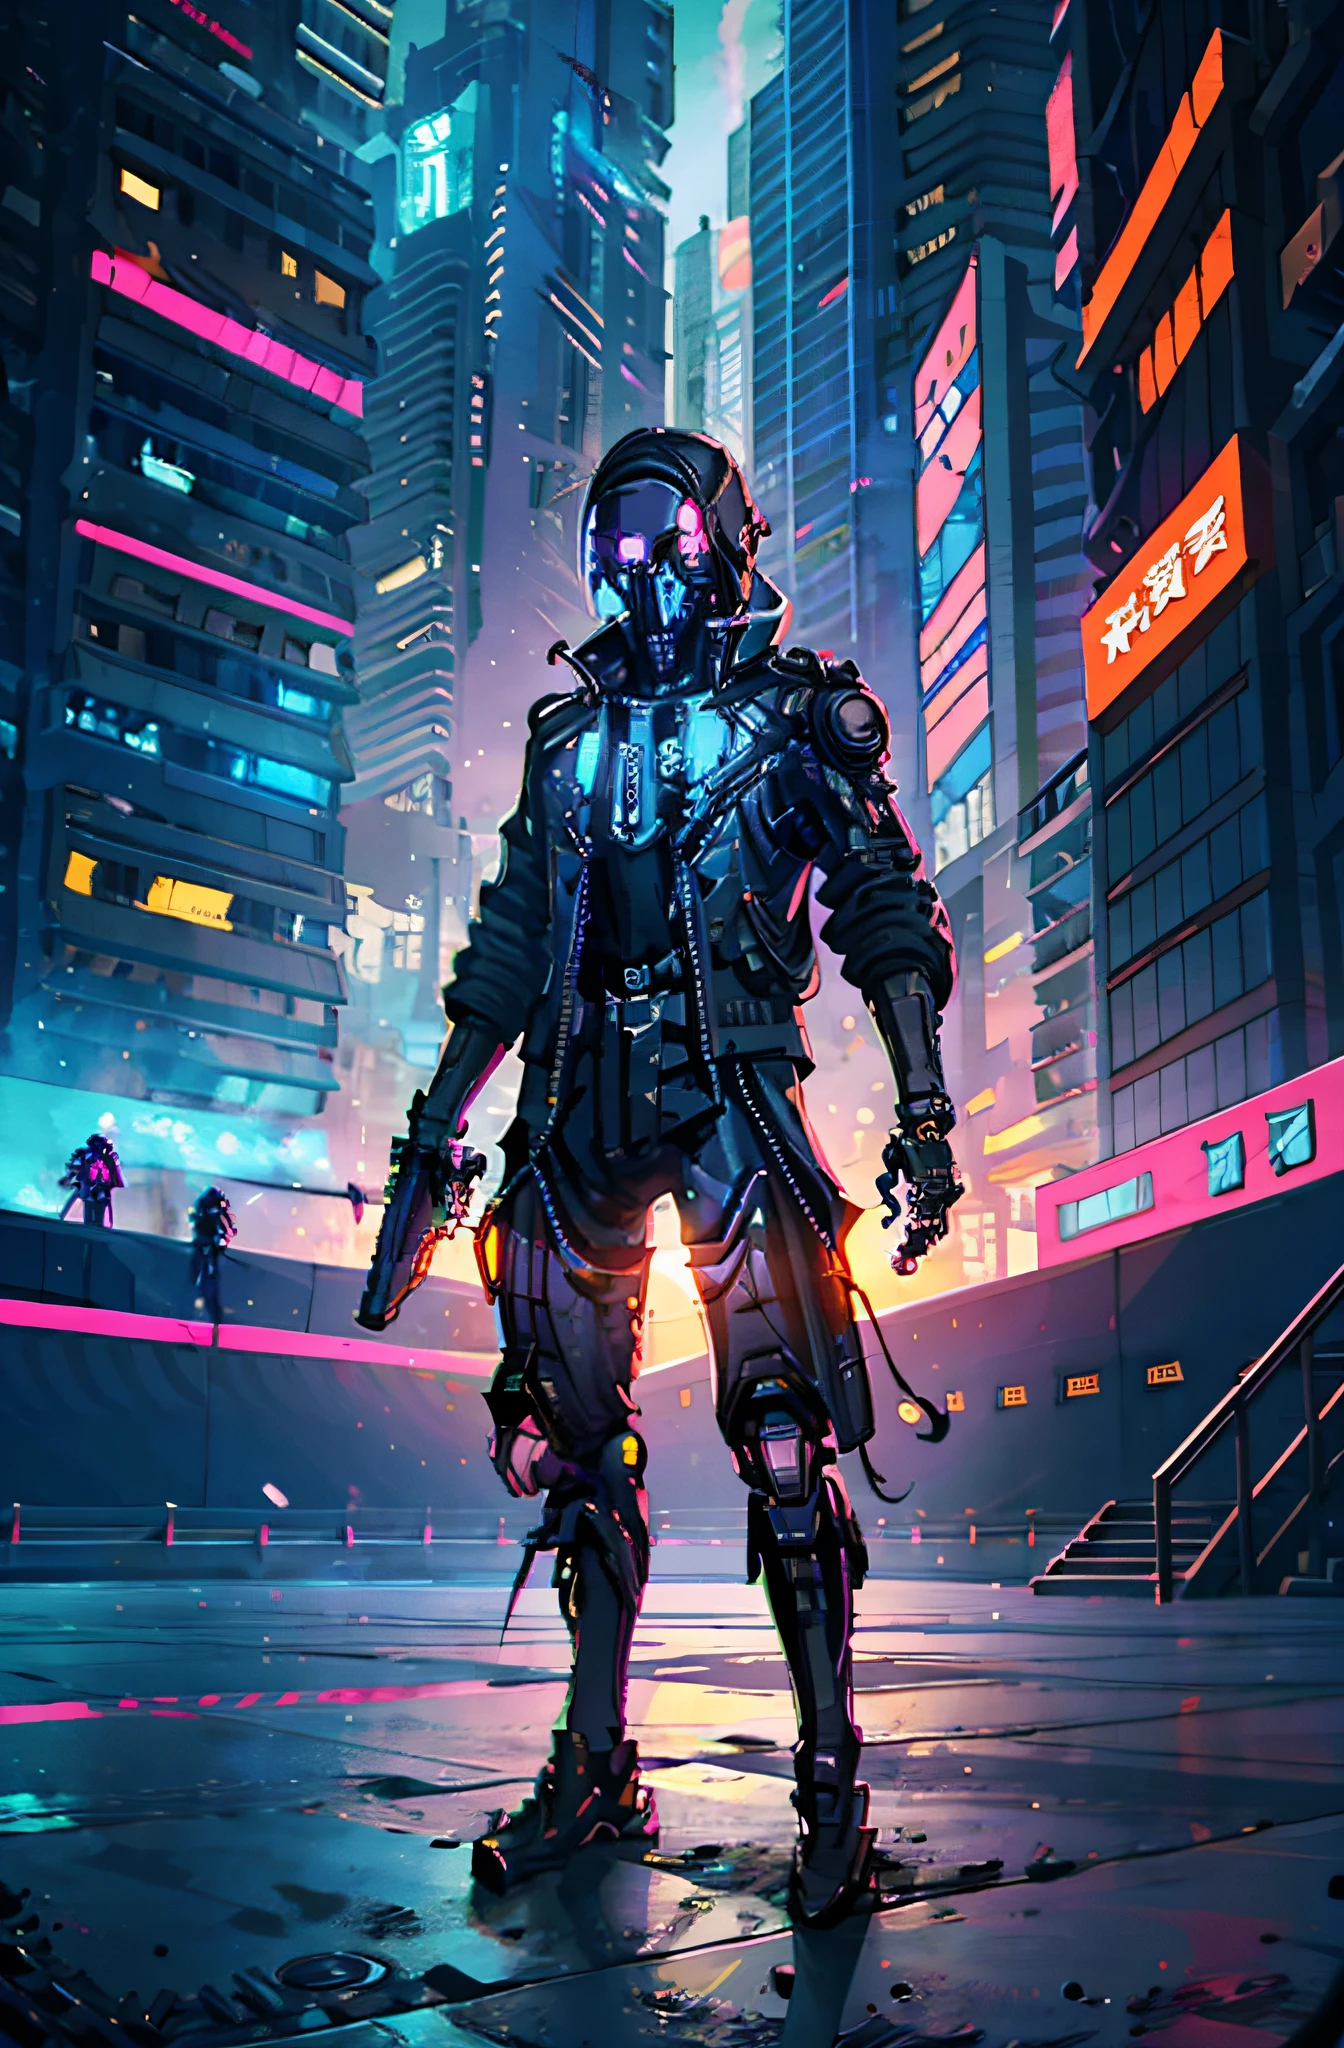 soldado cibernético con arma en mano en una ciudad futurista(esqueleto), (esqueleto), (ciborg),estilo de arte ciberpunk, pixel art ciberpunk, estilo de arte ciberpunk, cyberpunk esqueleto, arte del anime ciberpunk, arte anime digital ciberpunk, ciberpunk muy detallado, ciberpunk digital - arte anime, ilustración detallada del cyberpunk, sombreado ciberpunk, arte con temática cyberpunk, vaquero del ciberespacio,  arte del anime ciberpunk, arte ciberpunk, colores vibrantes del cyberpunk, (anatómicamente correcto)